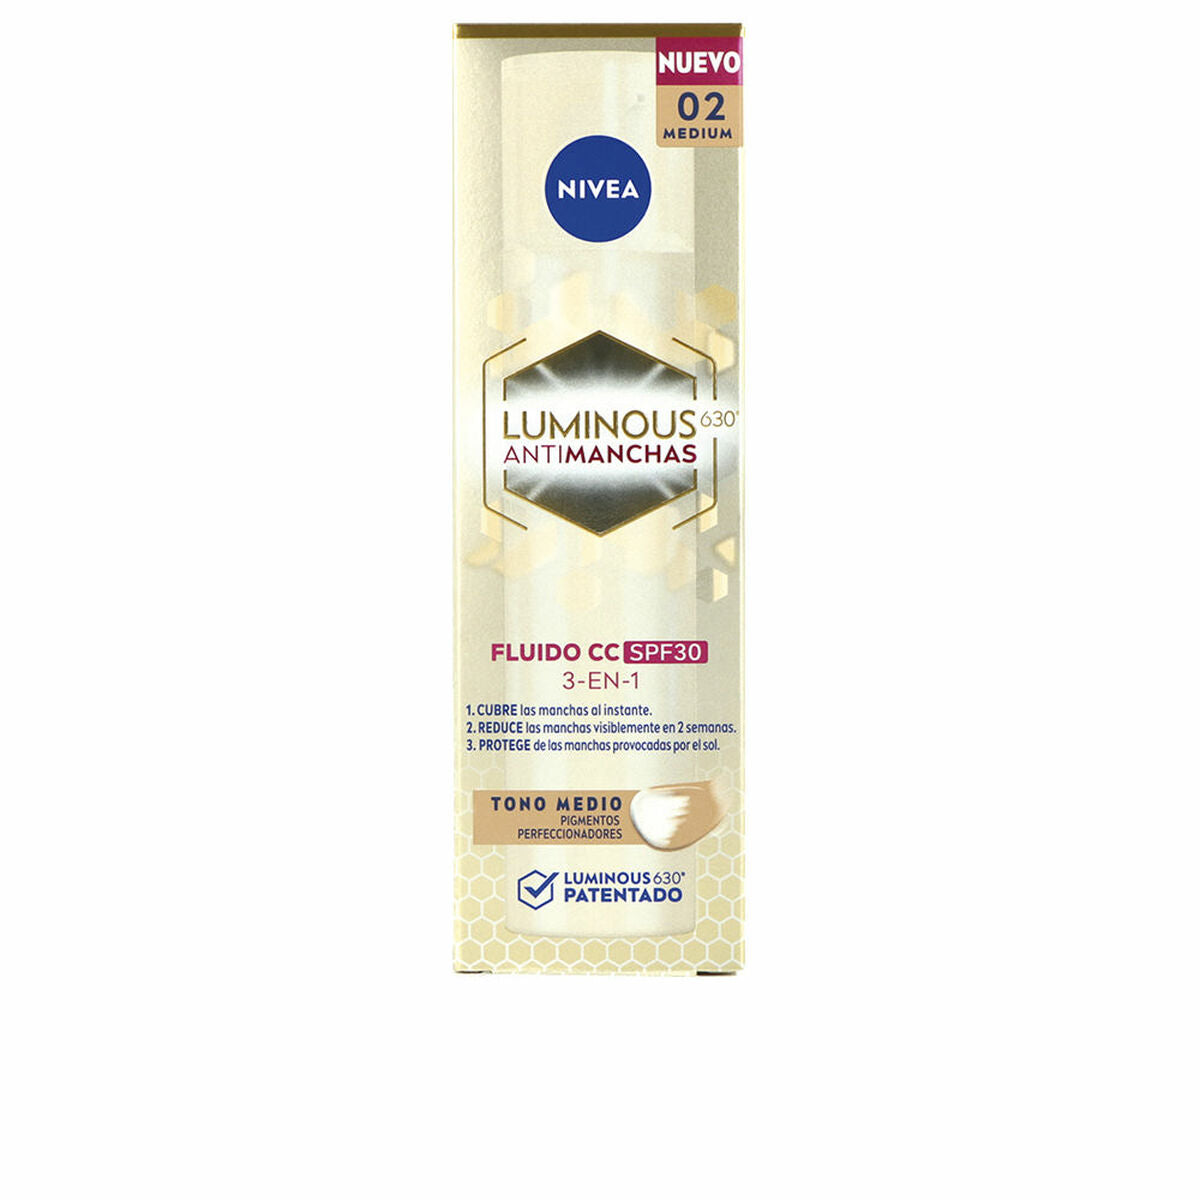 CC Cream Nivea LUMINOUS 630º Mittel Spf 30 40 ml